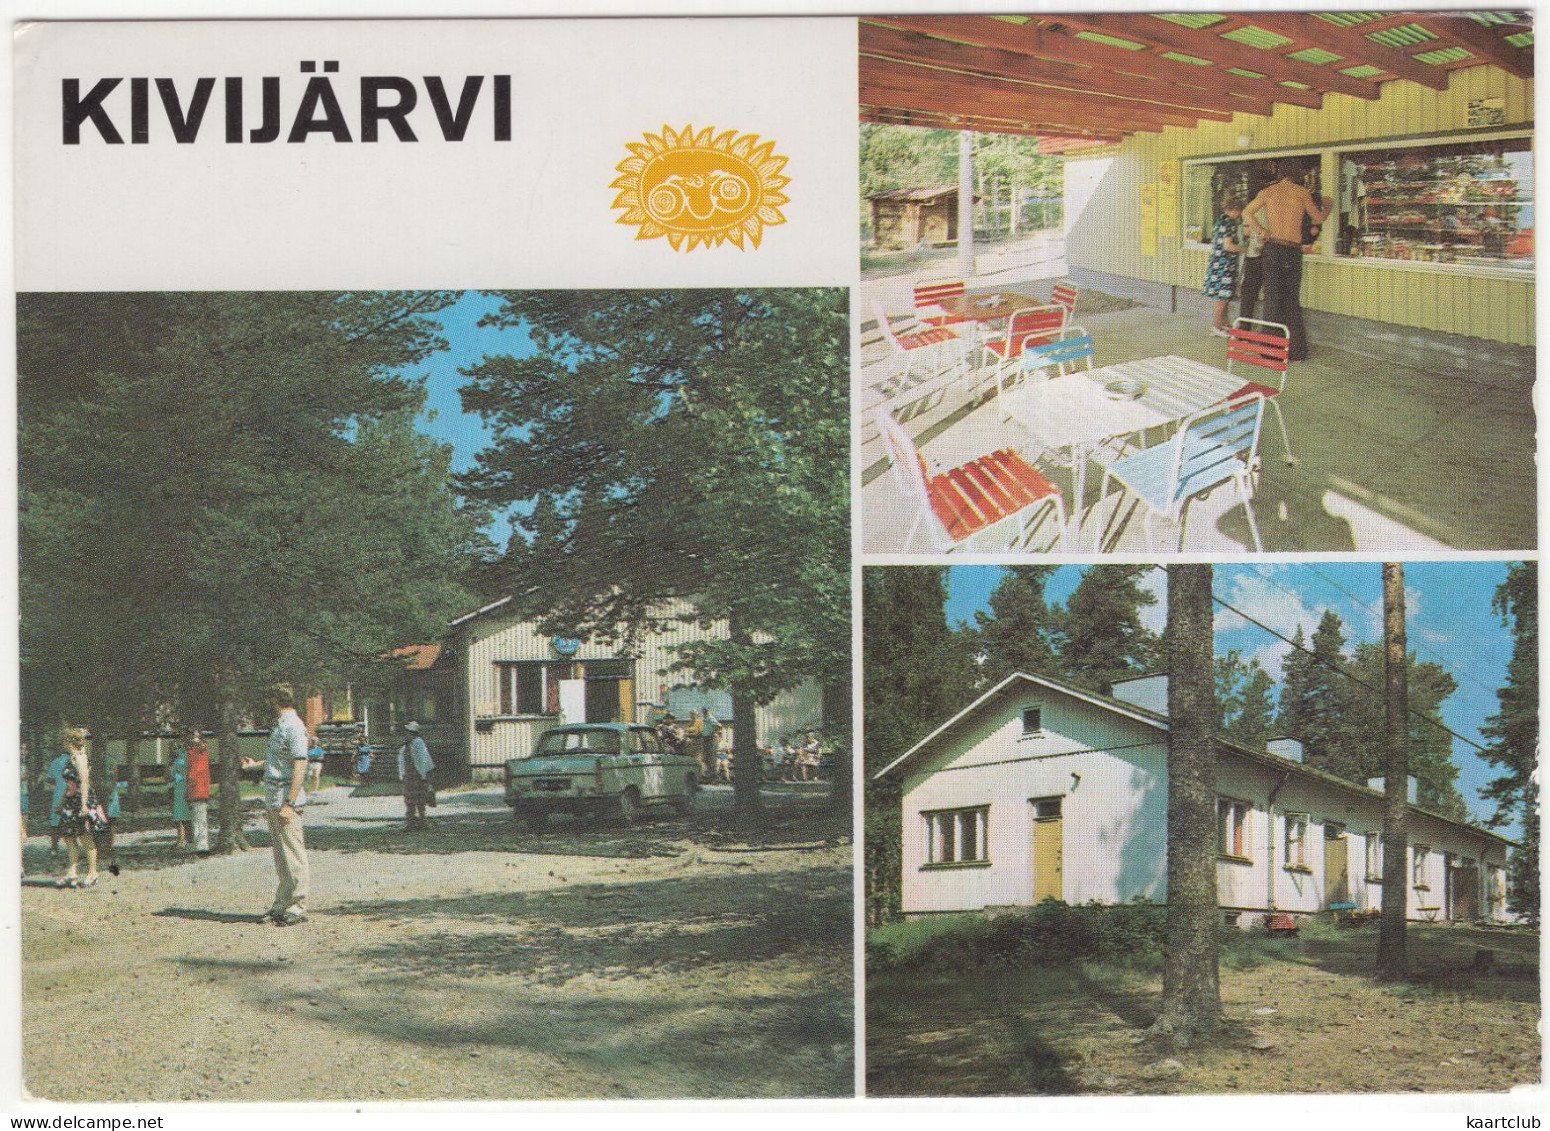 Kivijärvi: PEUGEOT 404 - Lomakylä - (Finland) - Toerisme